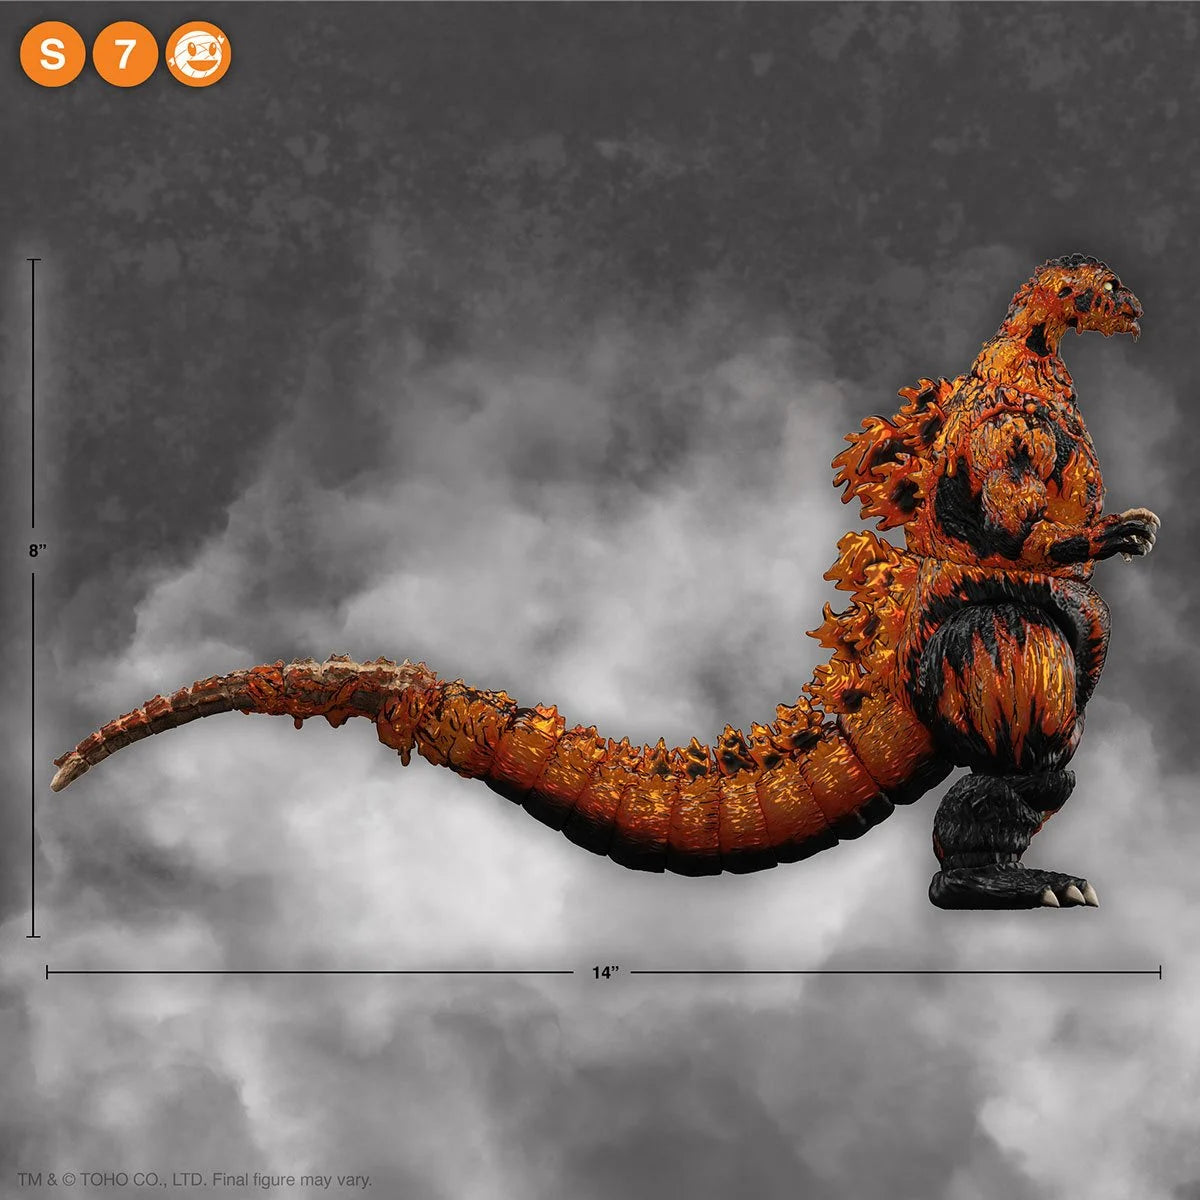 Godzilla Ultimates 1200 Degrees Celsius Precio final $1,900 apartas con $300